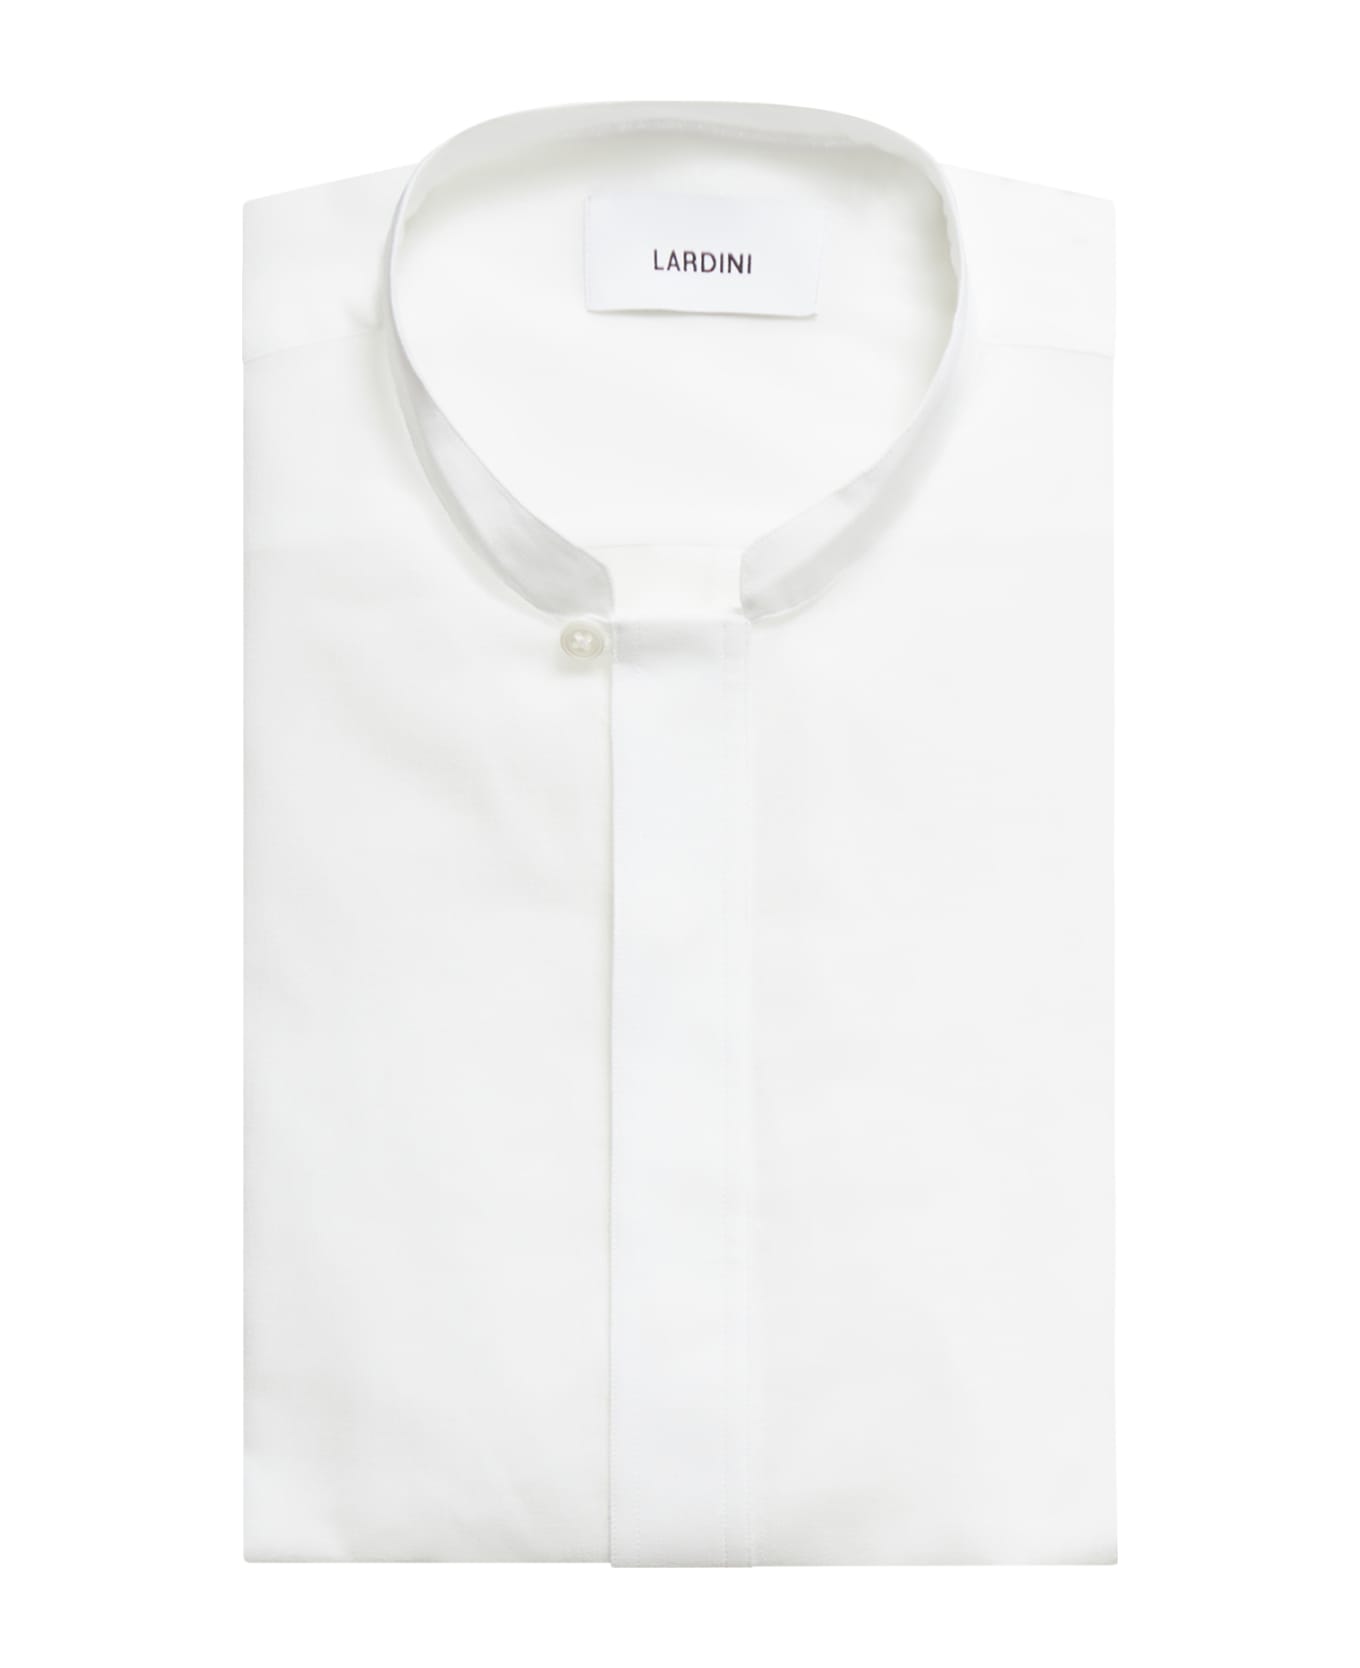 Lardini Shirt - White シャツ